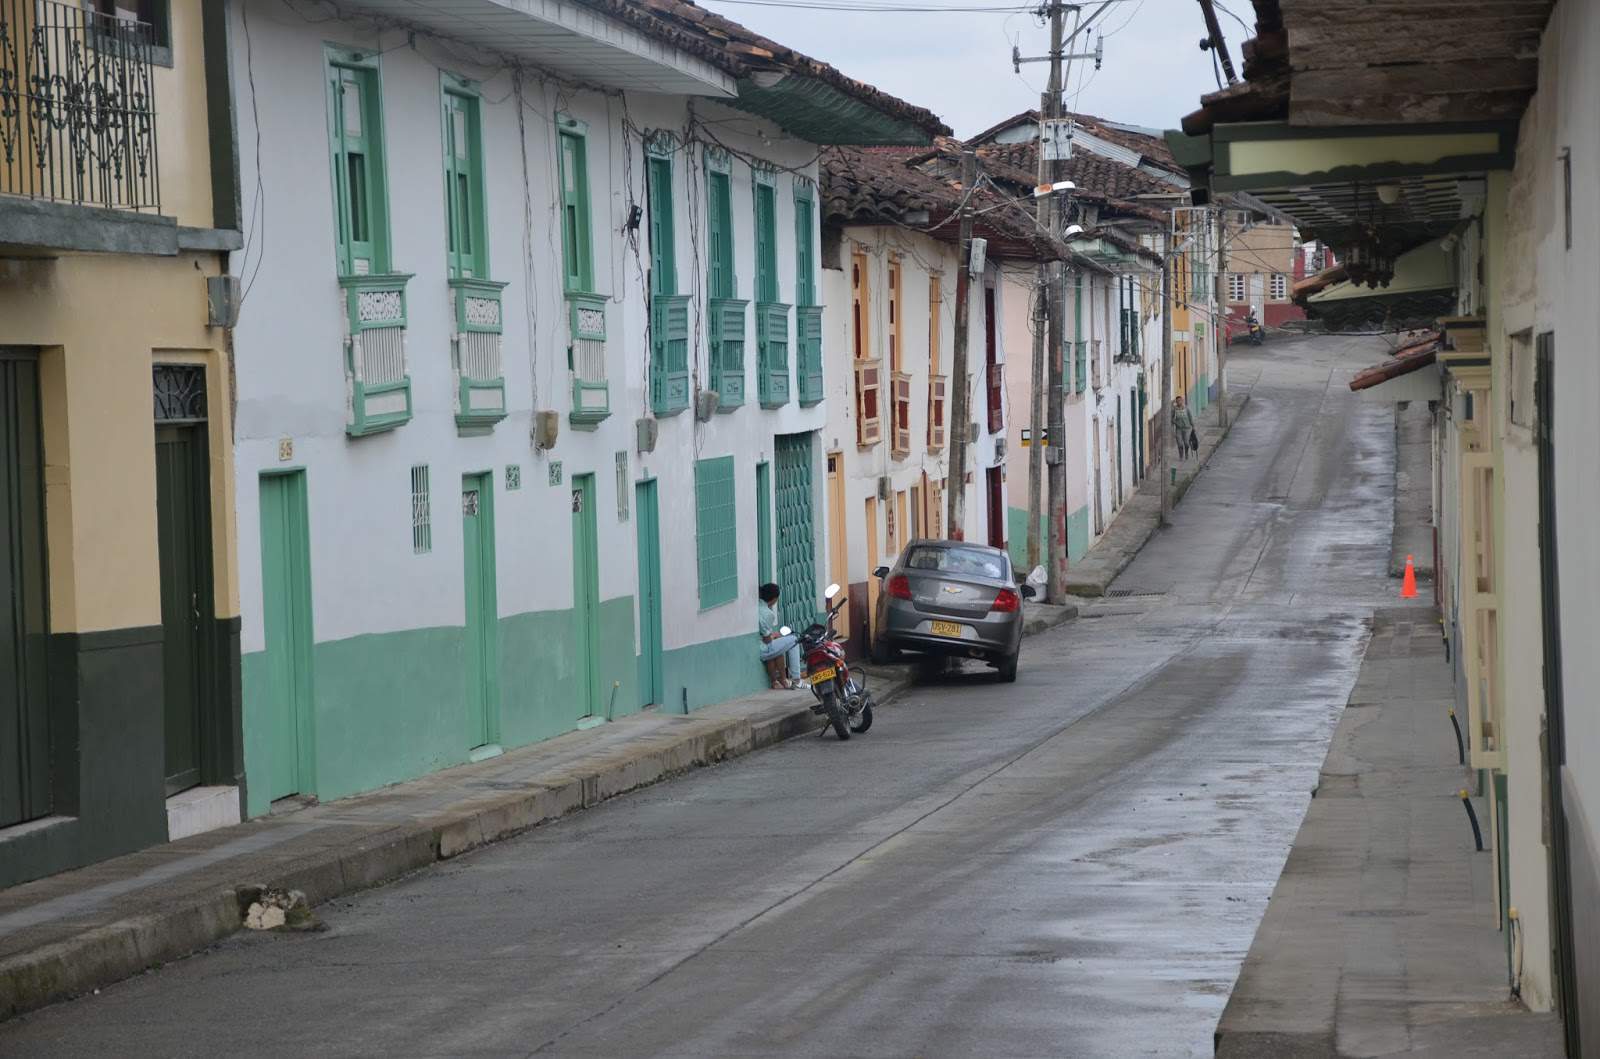 A street in Aguadas, Caldas, Colombia